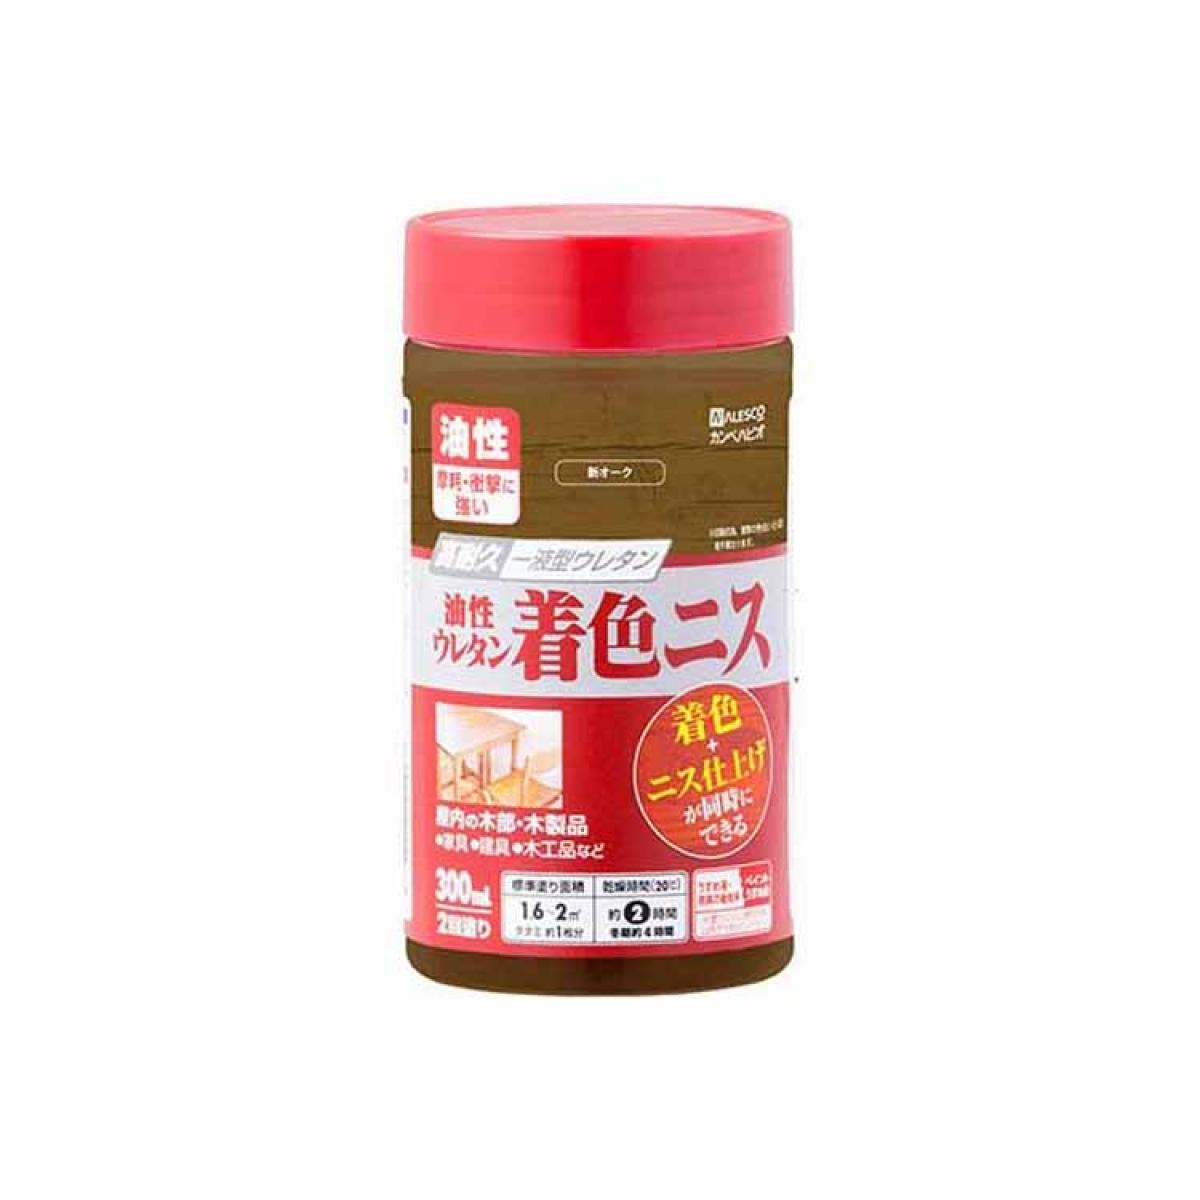 和信ペイント ガードラック アクア A−2 オレンジ 270ml 2缶セット